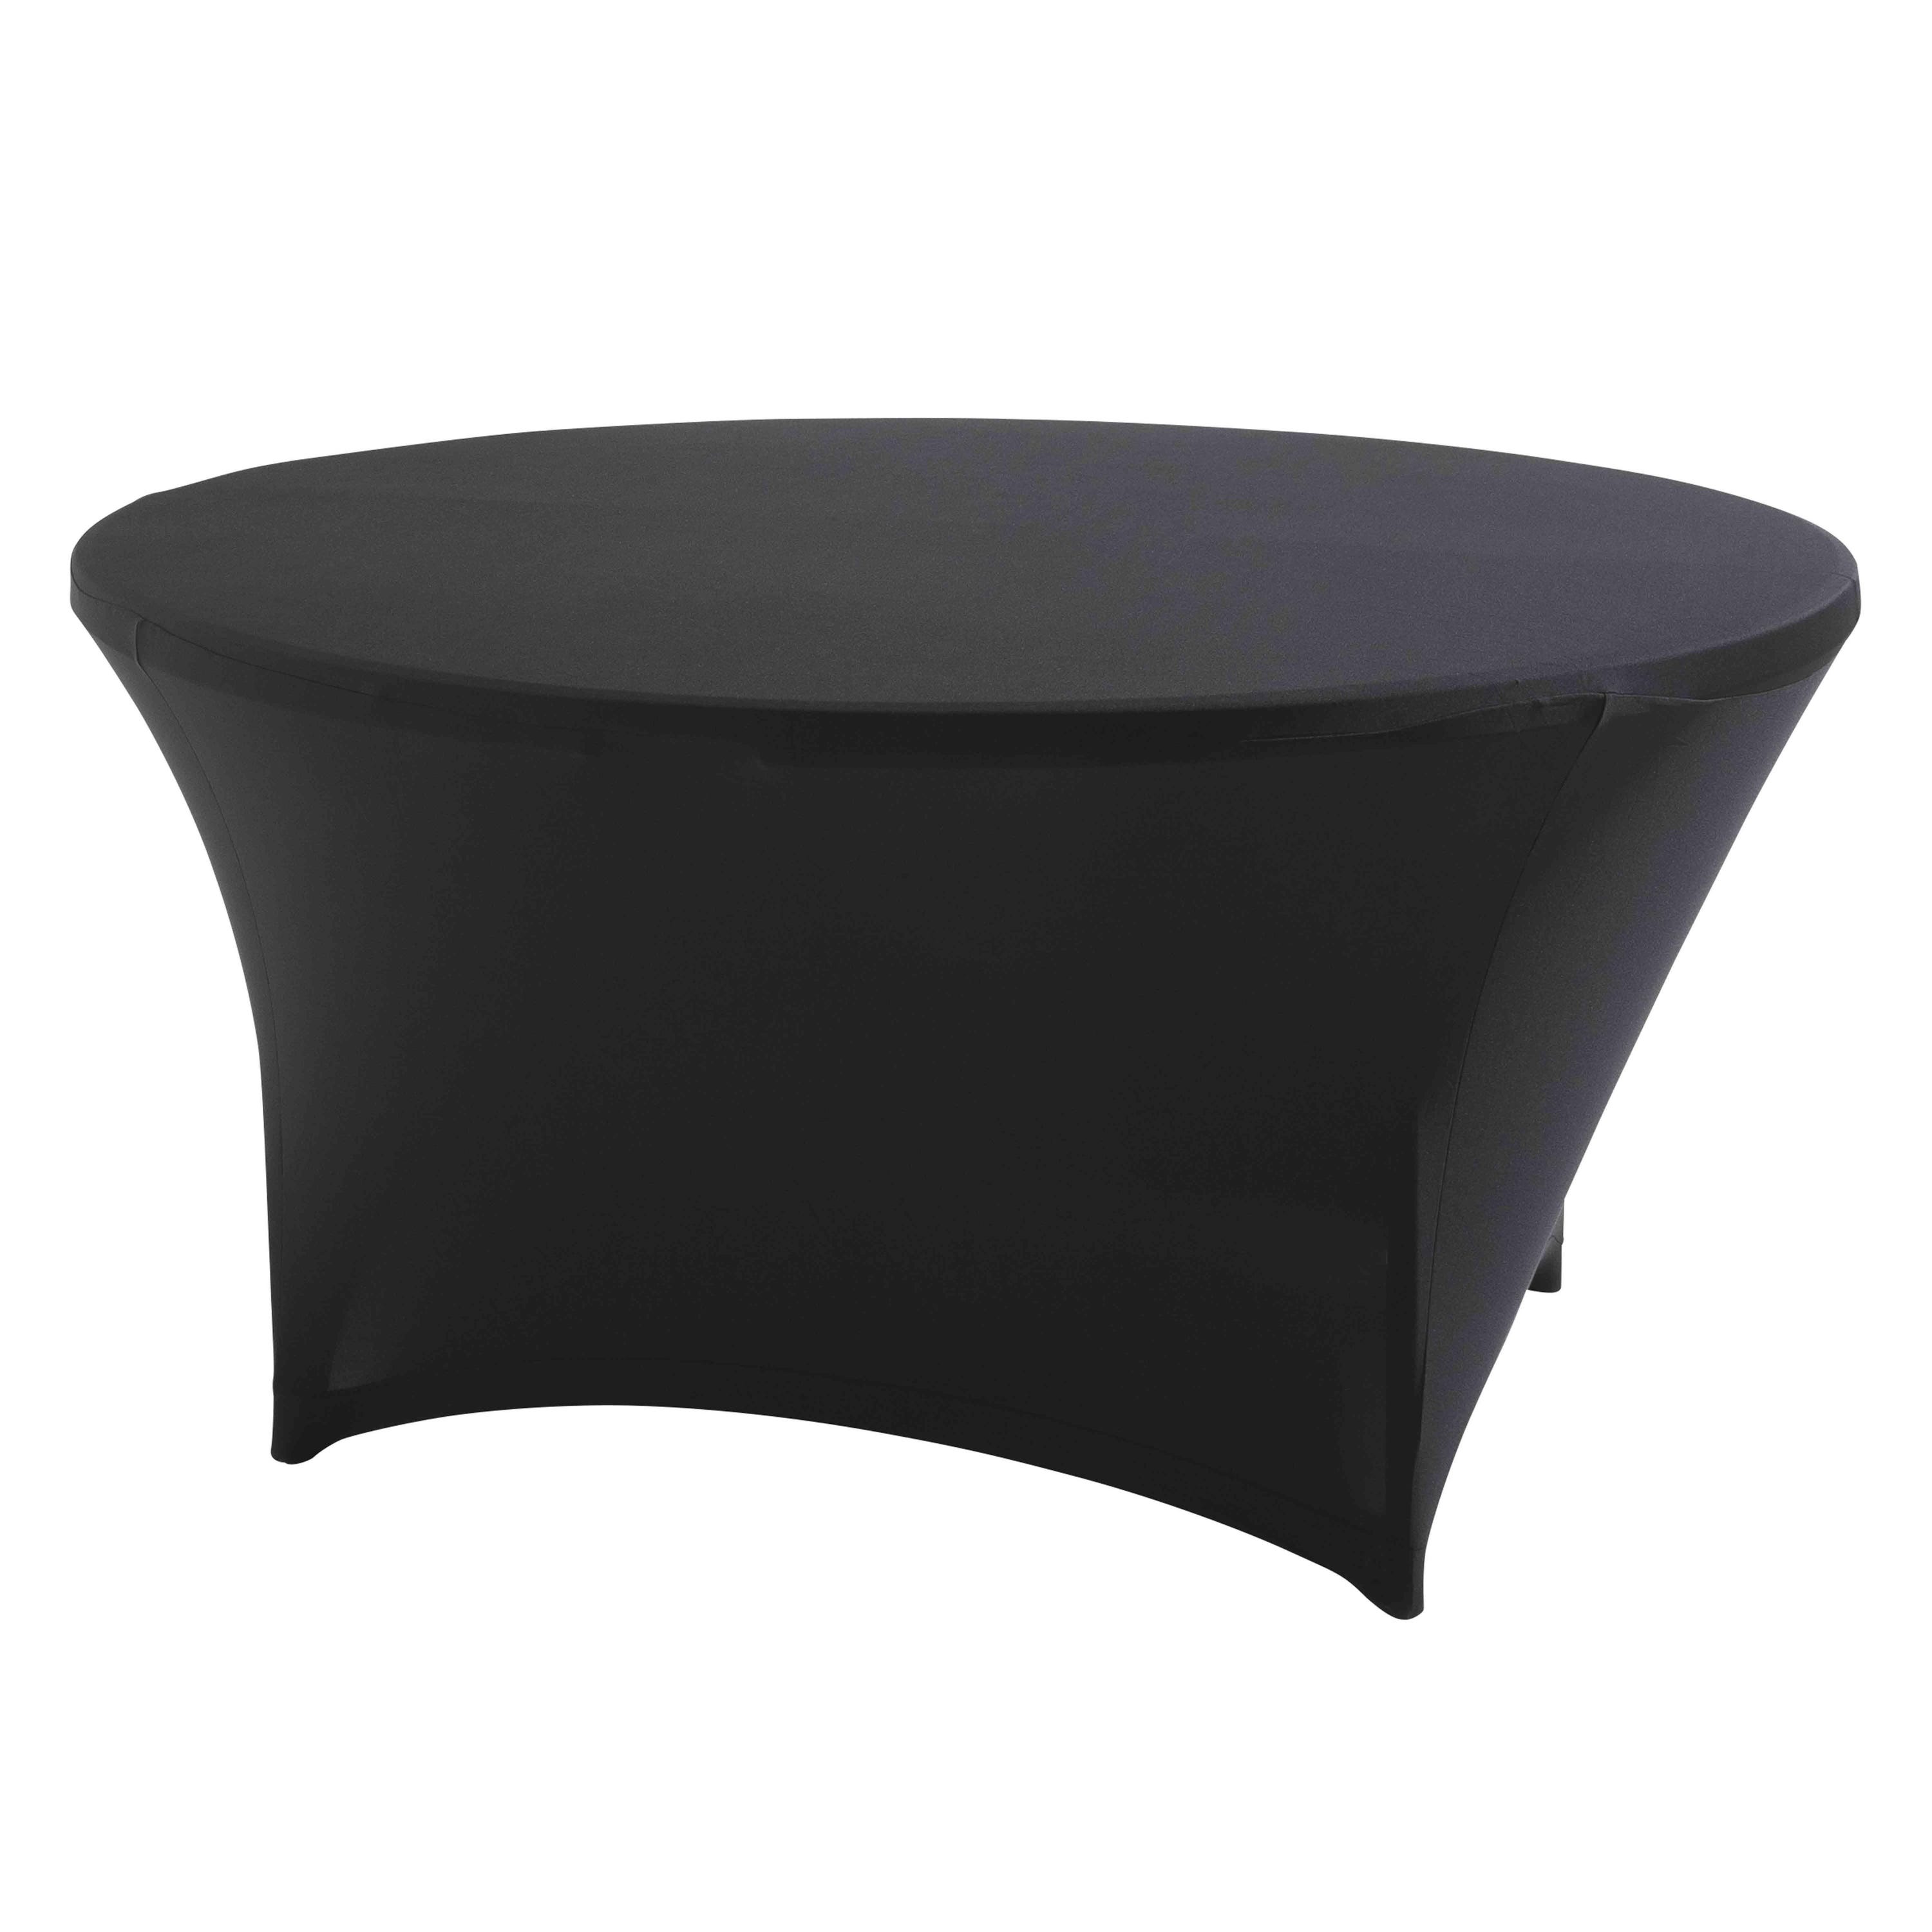 Mantel elástico para mesa redonda de 180 cm en color negro